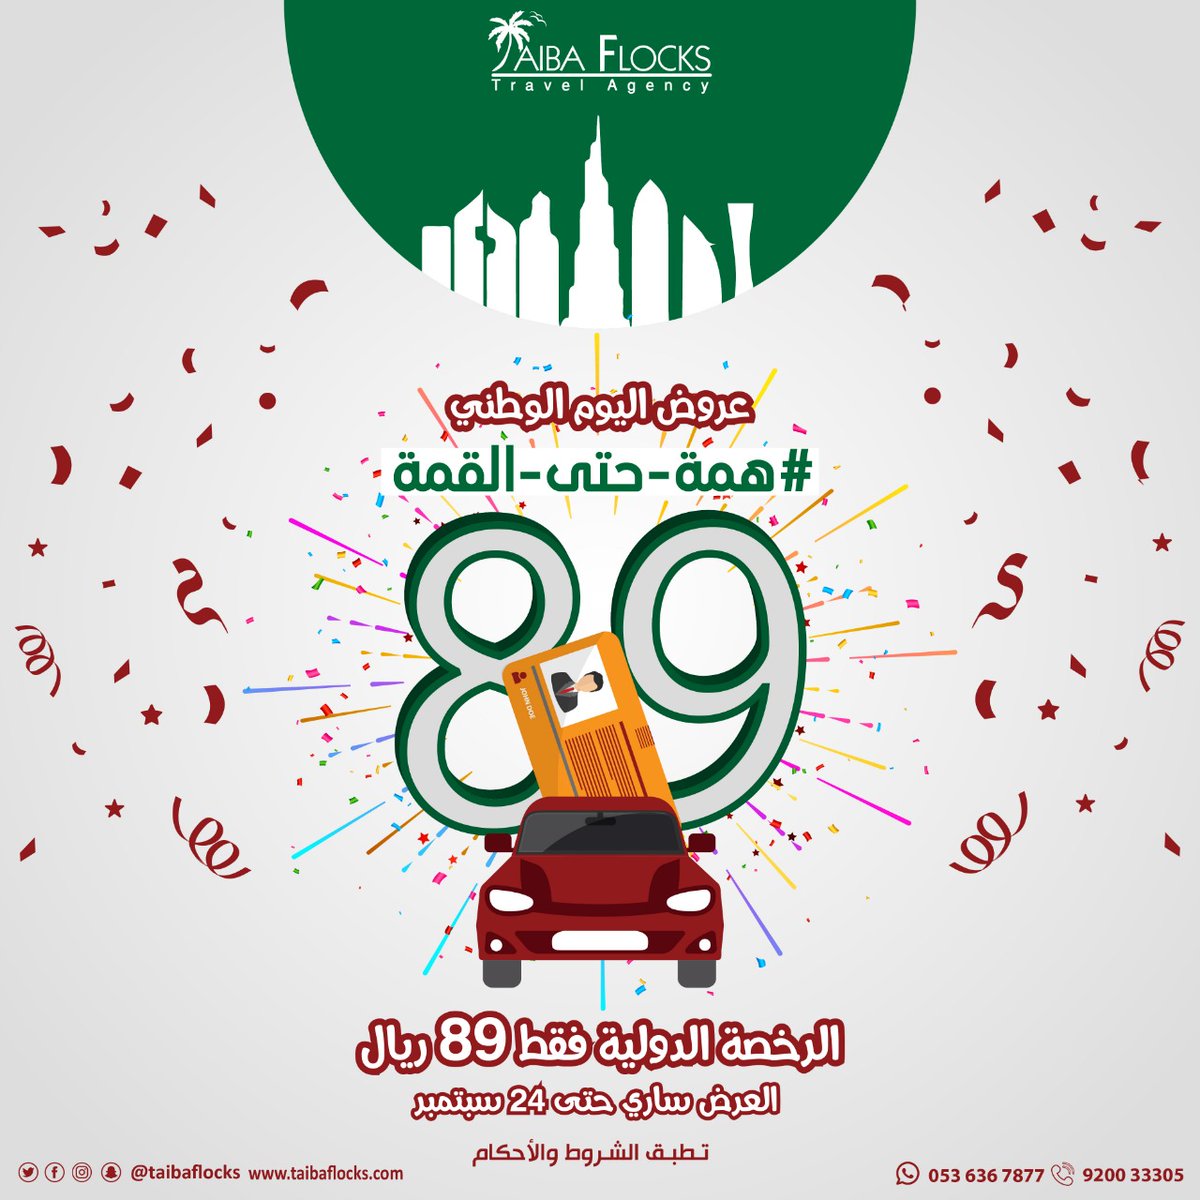 أقوى عروض اليوم الوطني السعودي 89.. المطاعم وسلع وتذاكر طيران بأسعار مخفضة 11